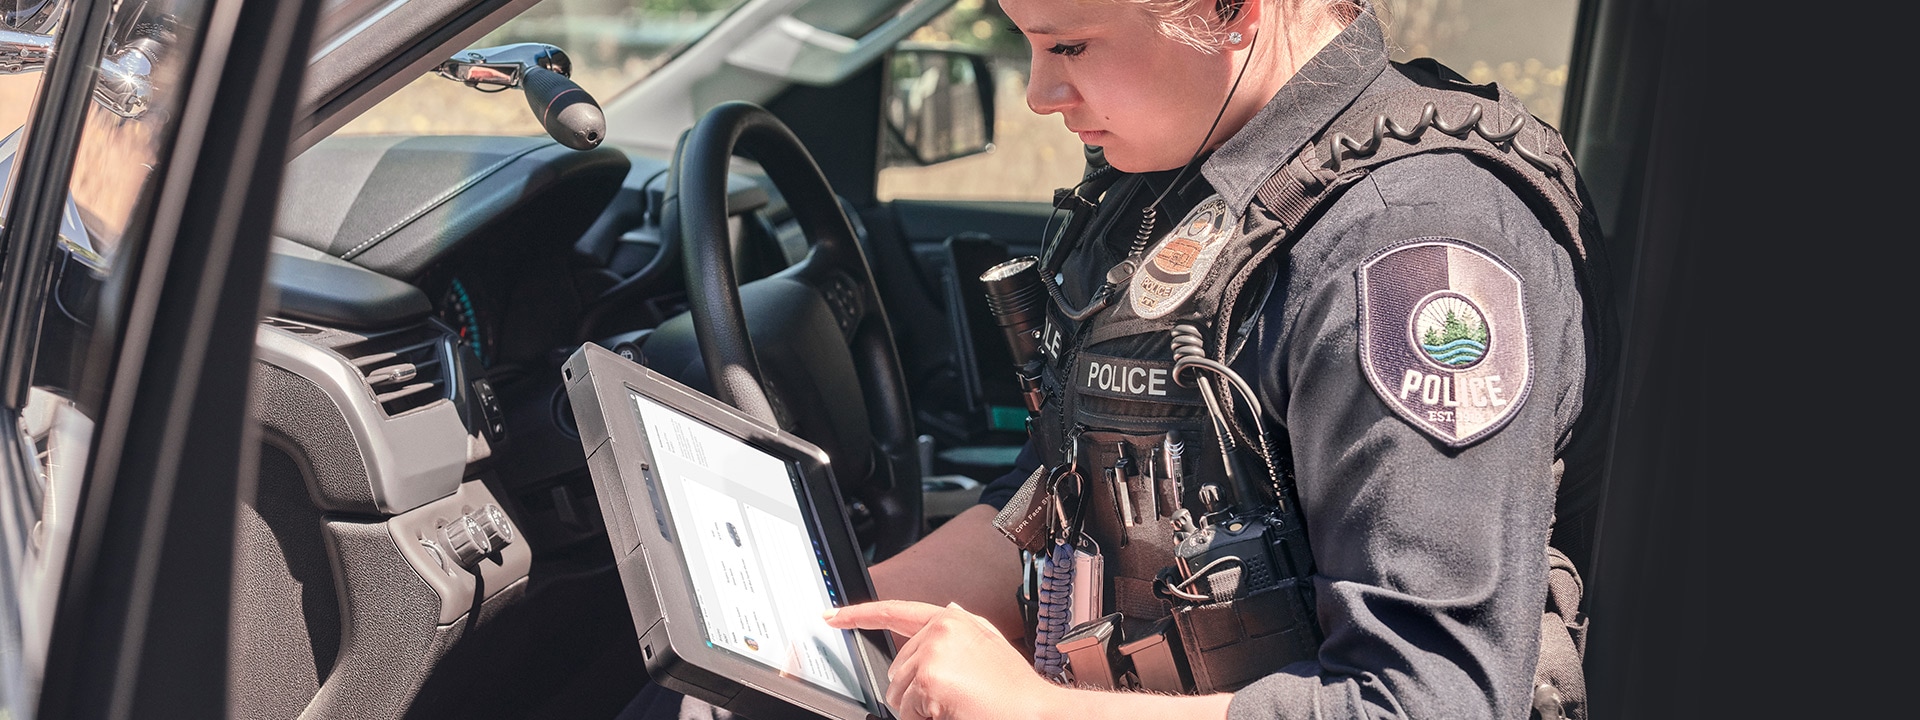 ตำรวจหญิงนั่งอยู่ในที่นั่งผู้โดยสารของรถลาดตระเวนขณะใช้อุปกรณ์ Surface Pro